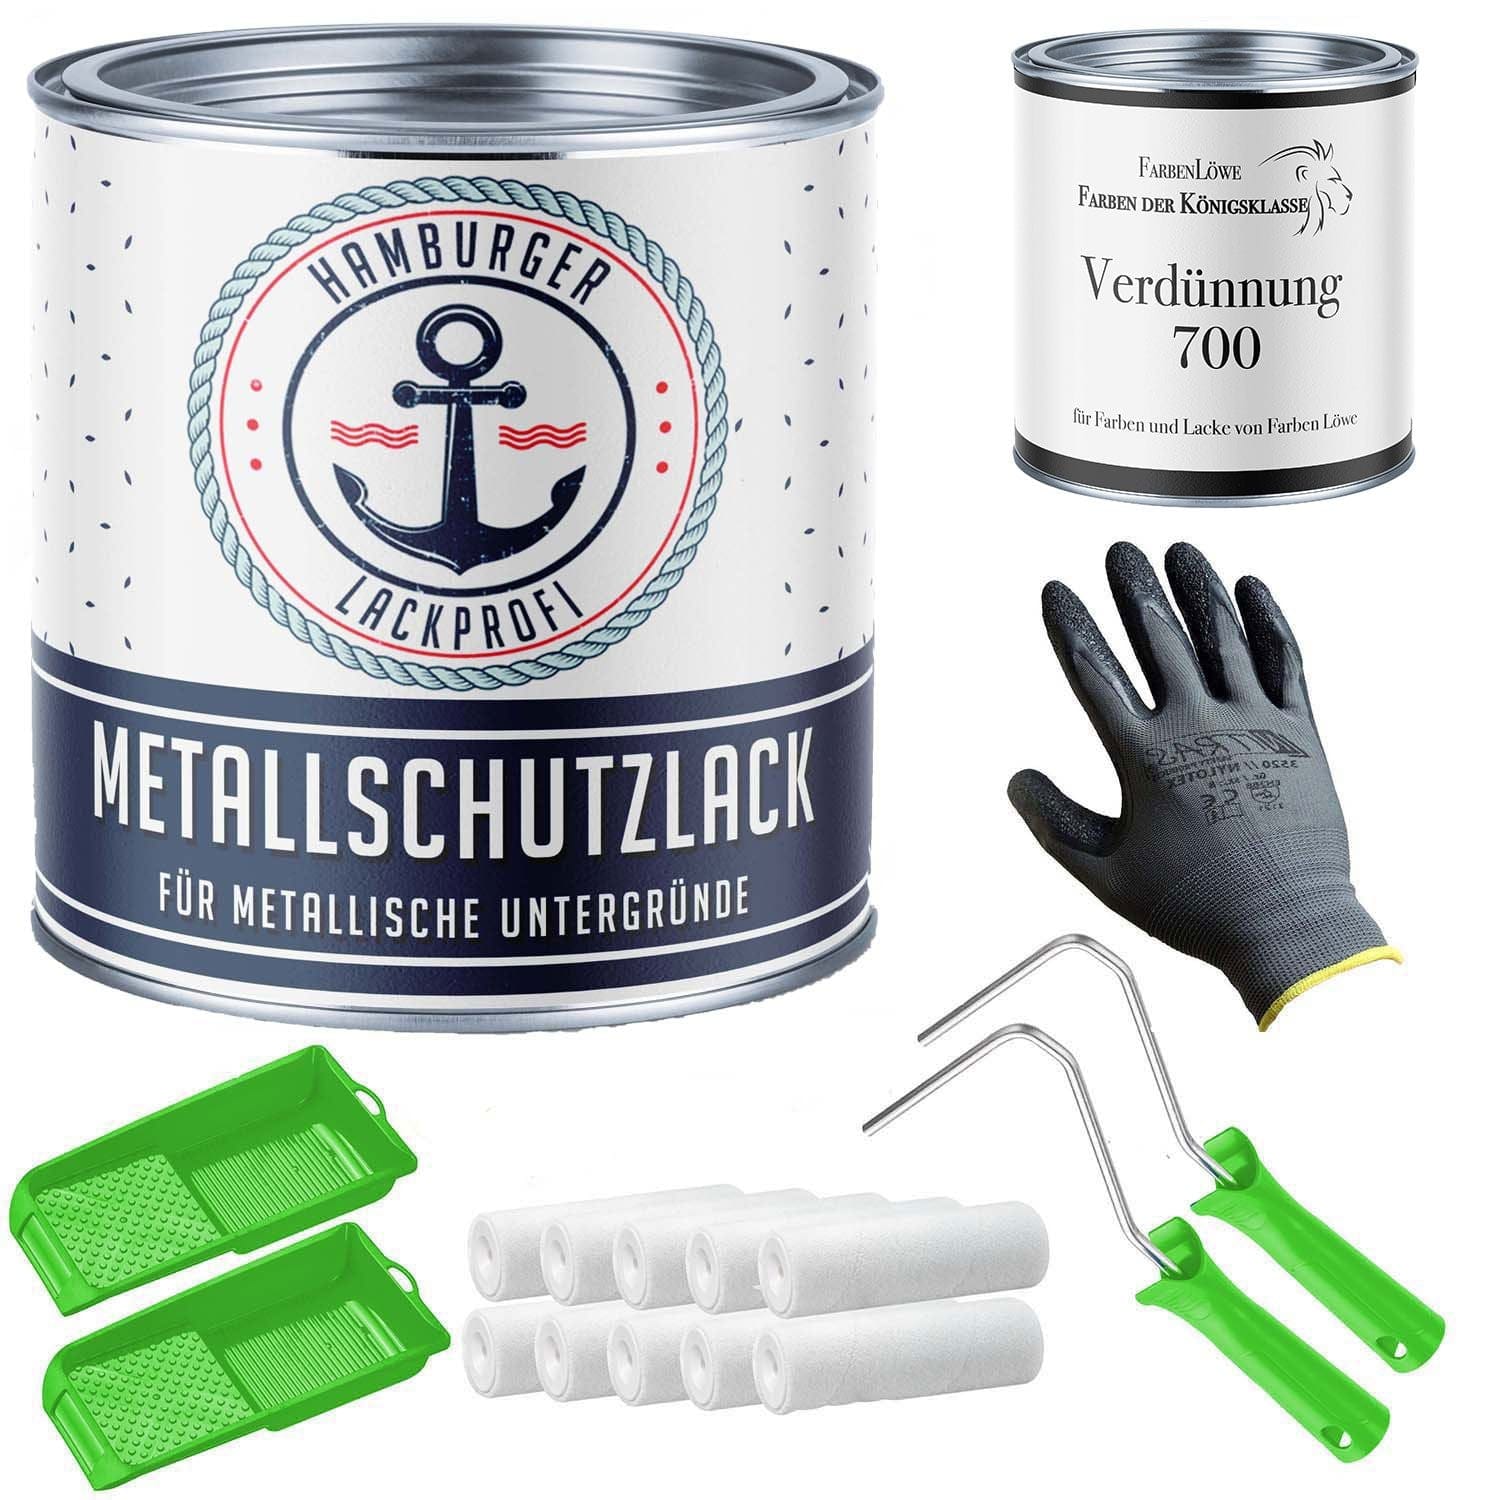 FARBENLÖWE Lacke & Beschichtungen Hamburger Lack-Profi Metallschutzlack in Lichtblau RAL 5012 mit Lackierset (X300) & Verdünnung (1 L) - 30% Sparangebot